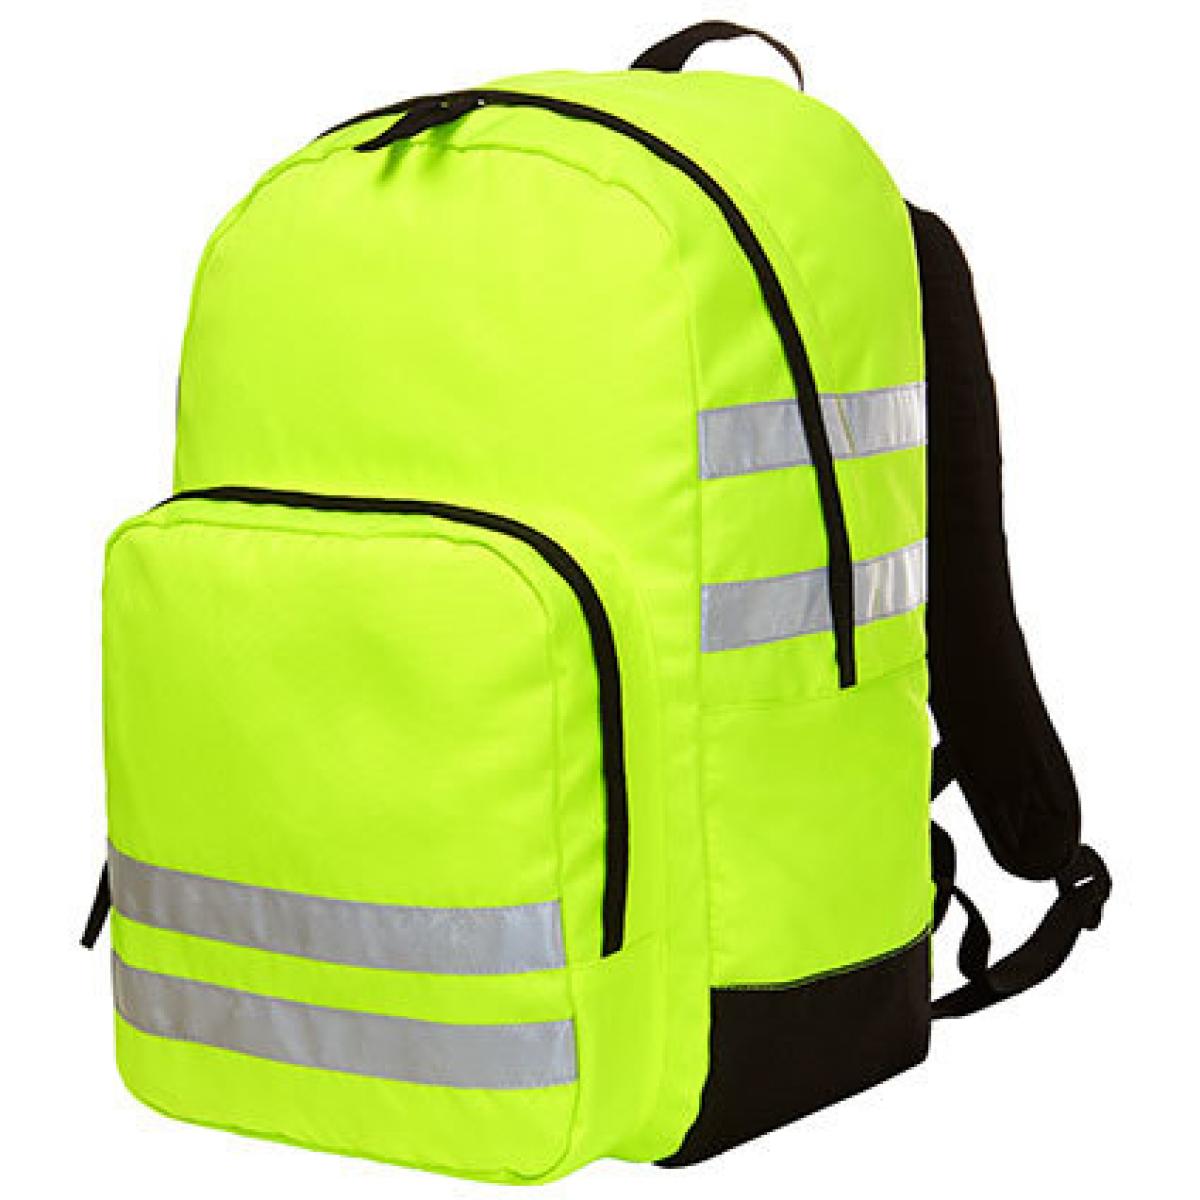 Hersteller: Halfar Herstellernummer: 1812206 Artikelbezeichnung: Sicherheits Rucksack Reflex Neon | 27 x 42 x 15 cm Farbe: Neon Yellow